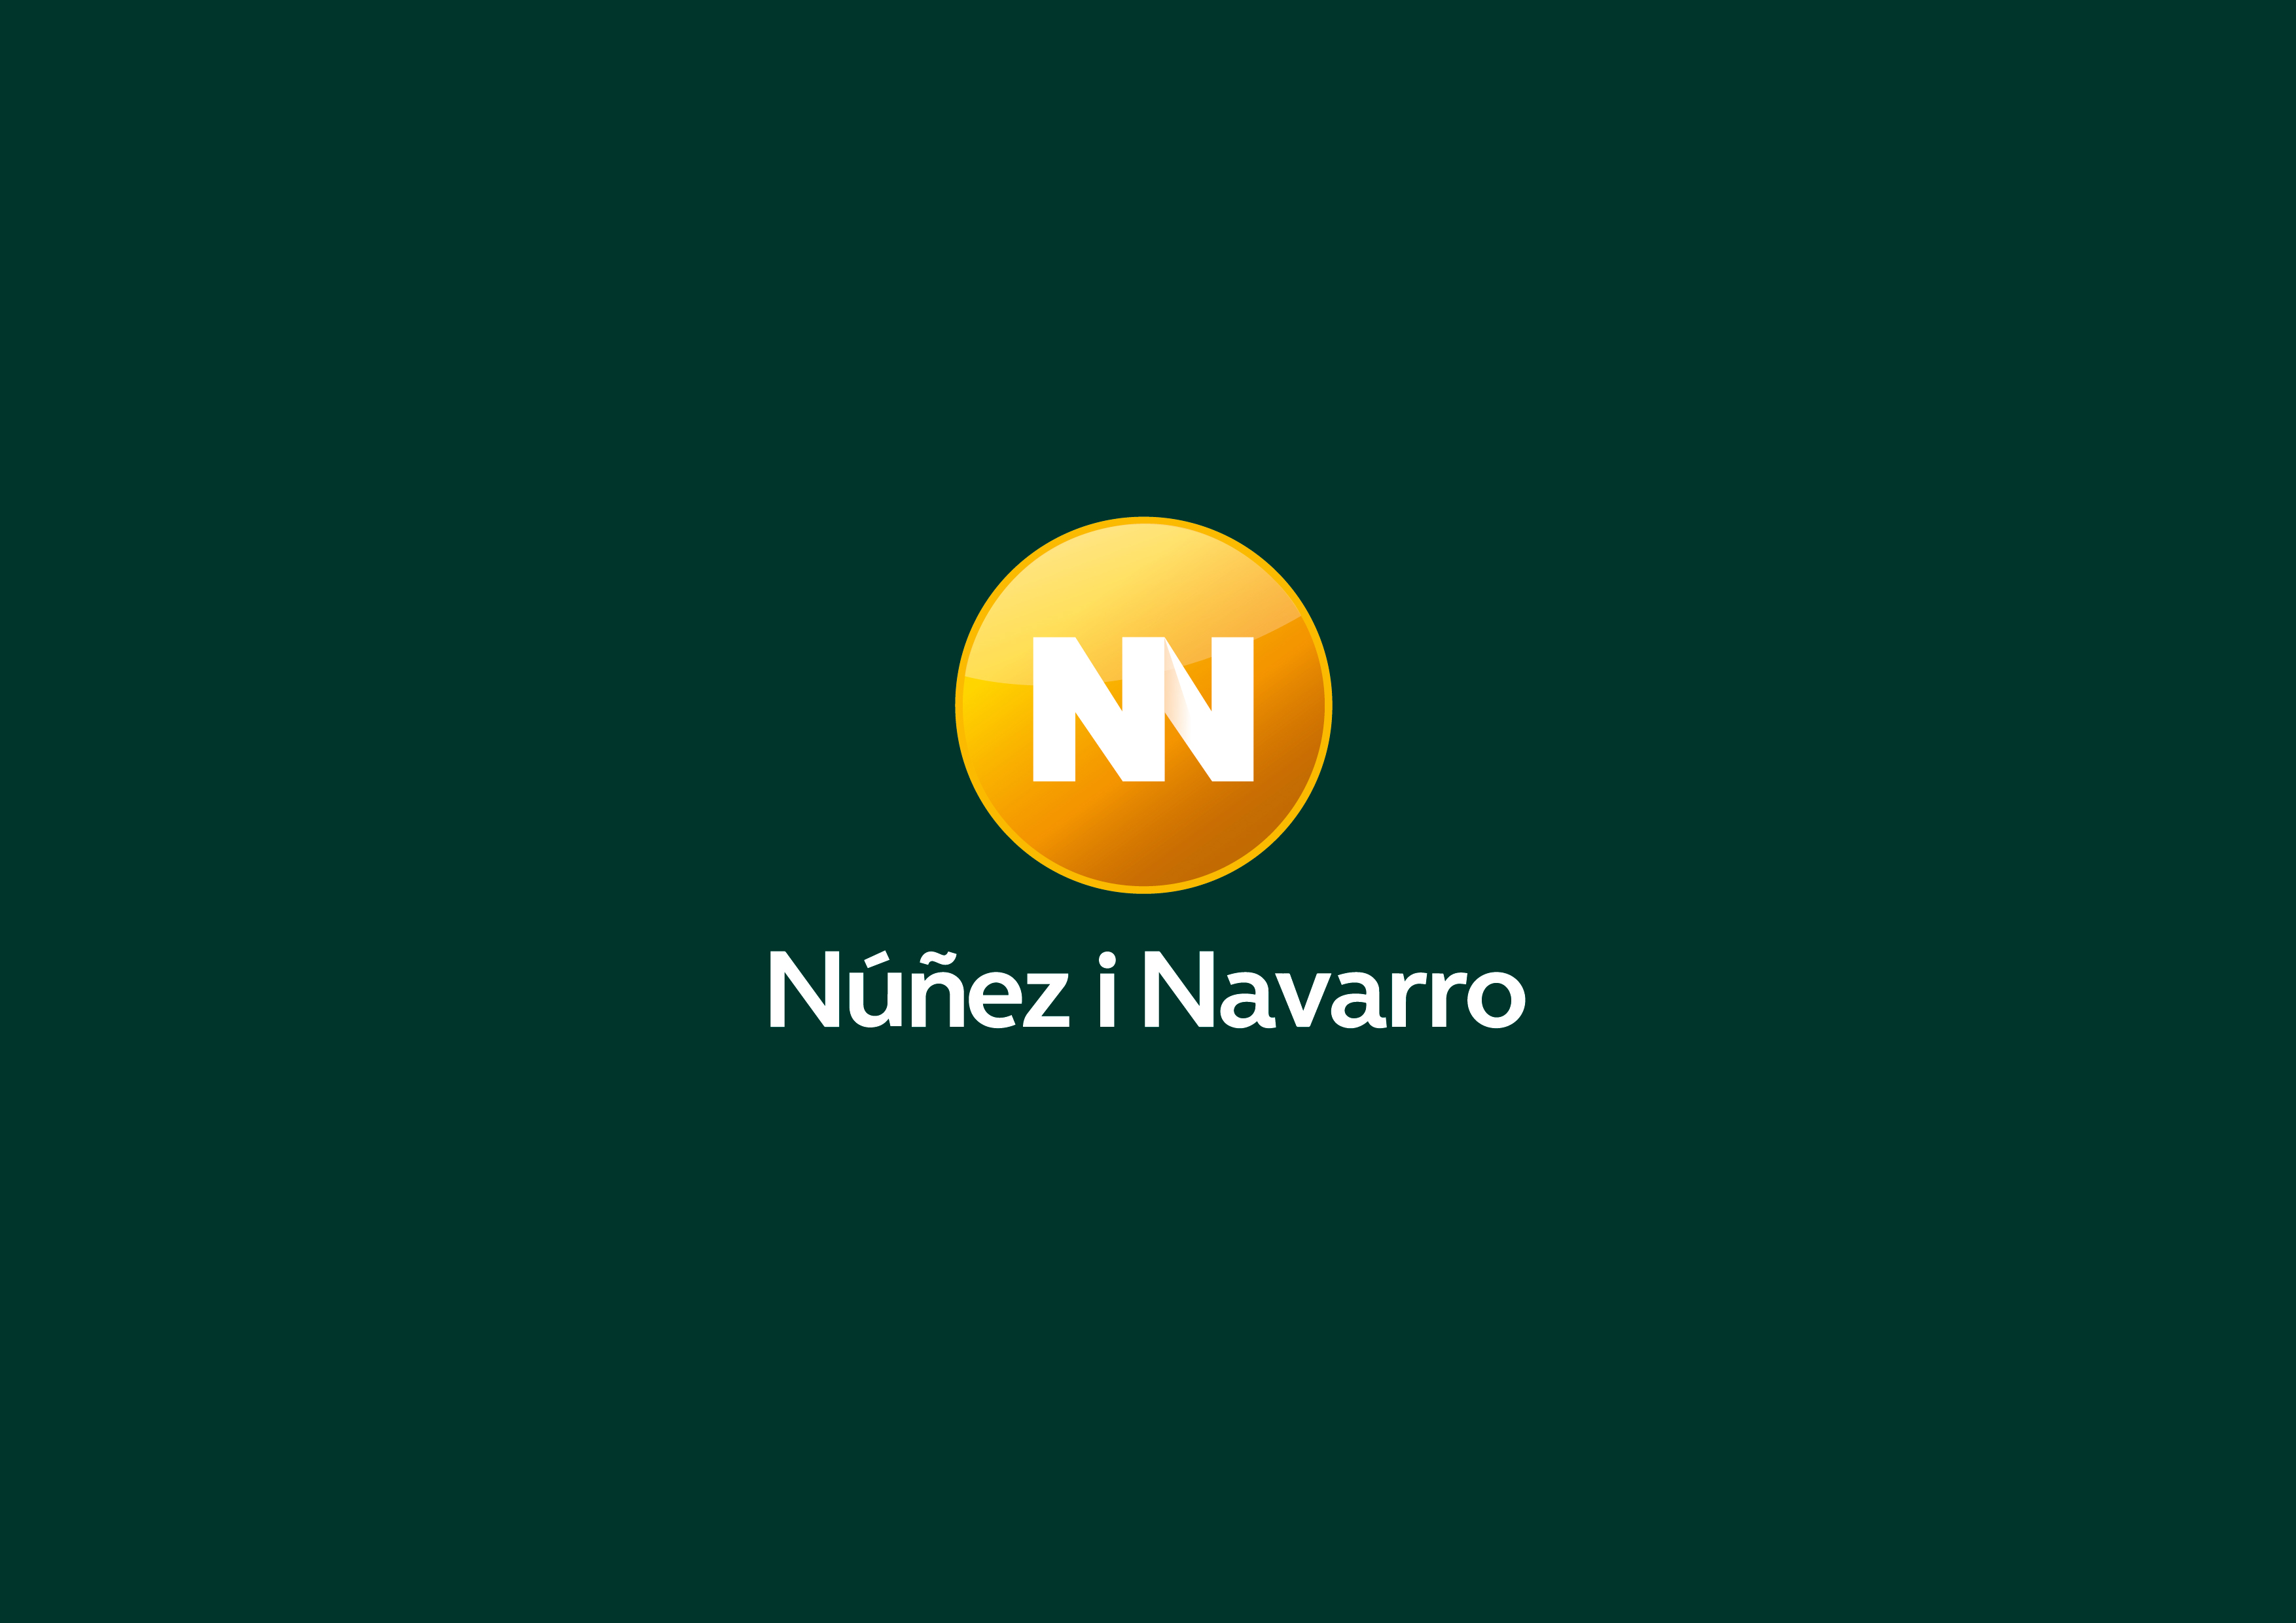 Nuñez i Navarro. Casa Lleó Morera